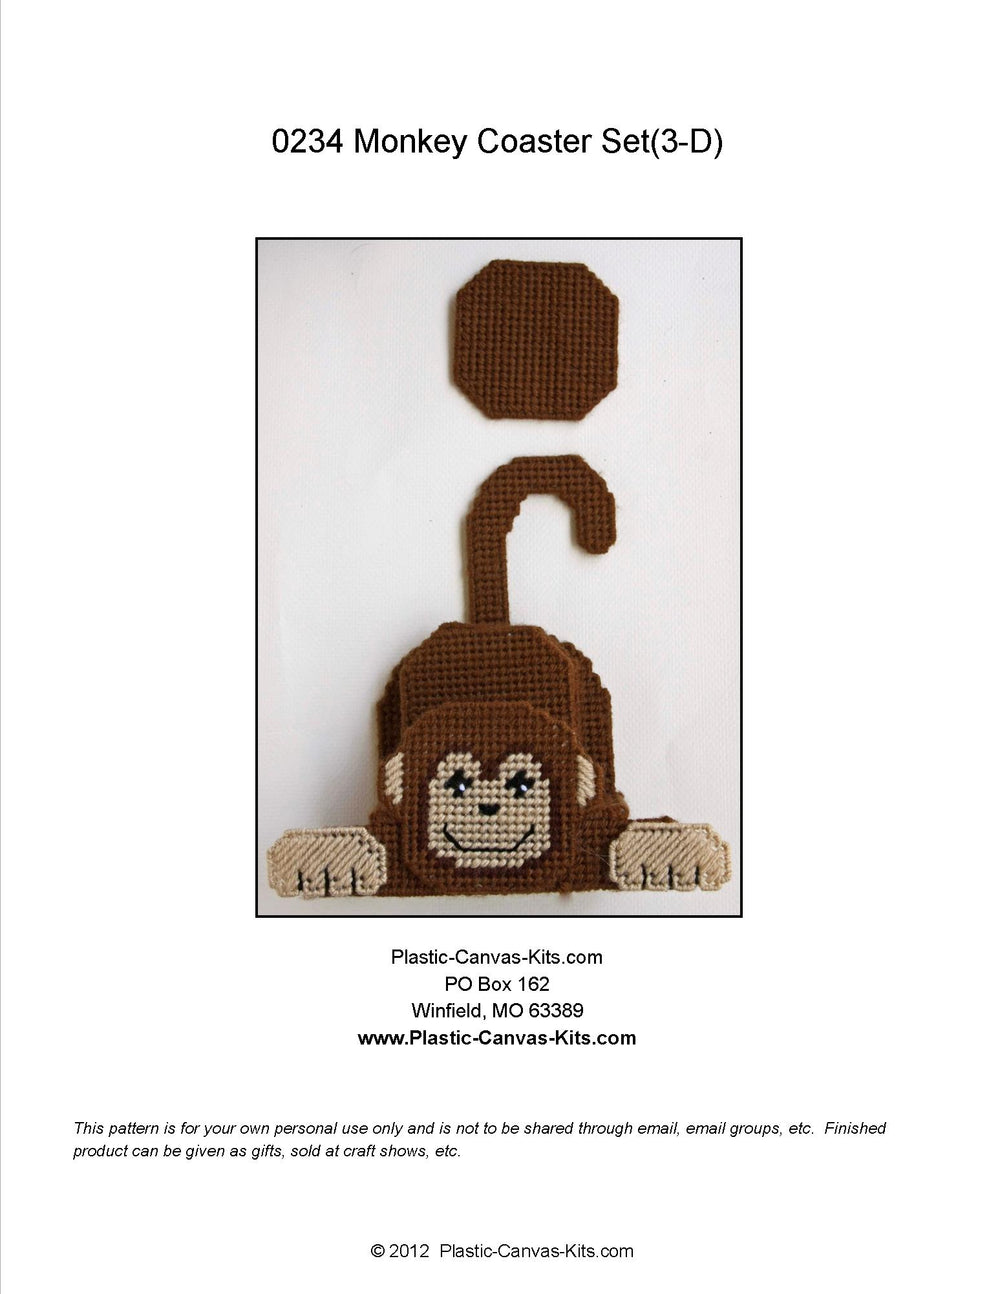 3-D Monkey Coaster Set